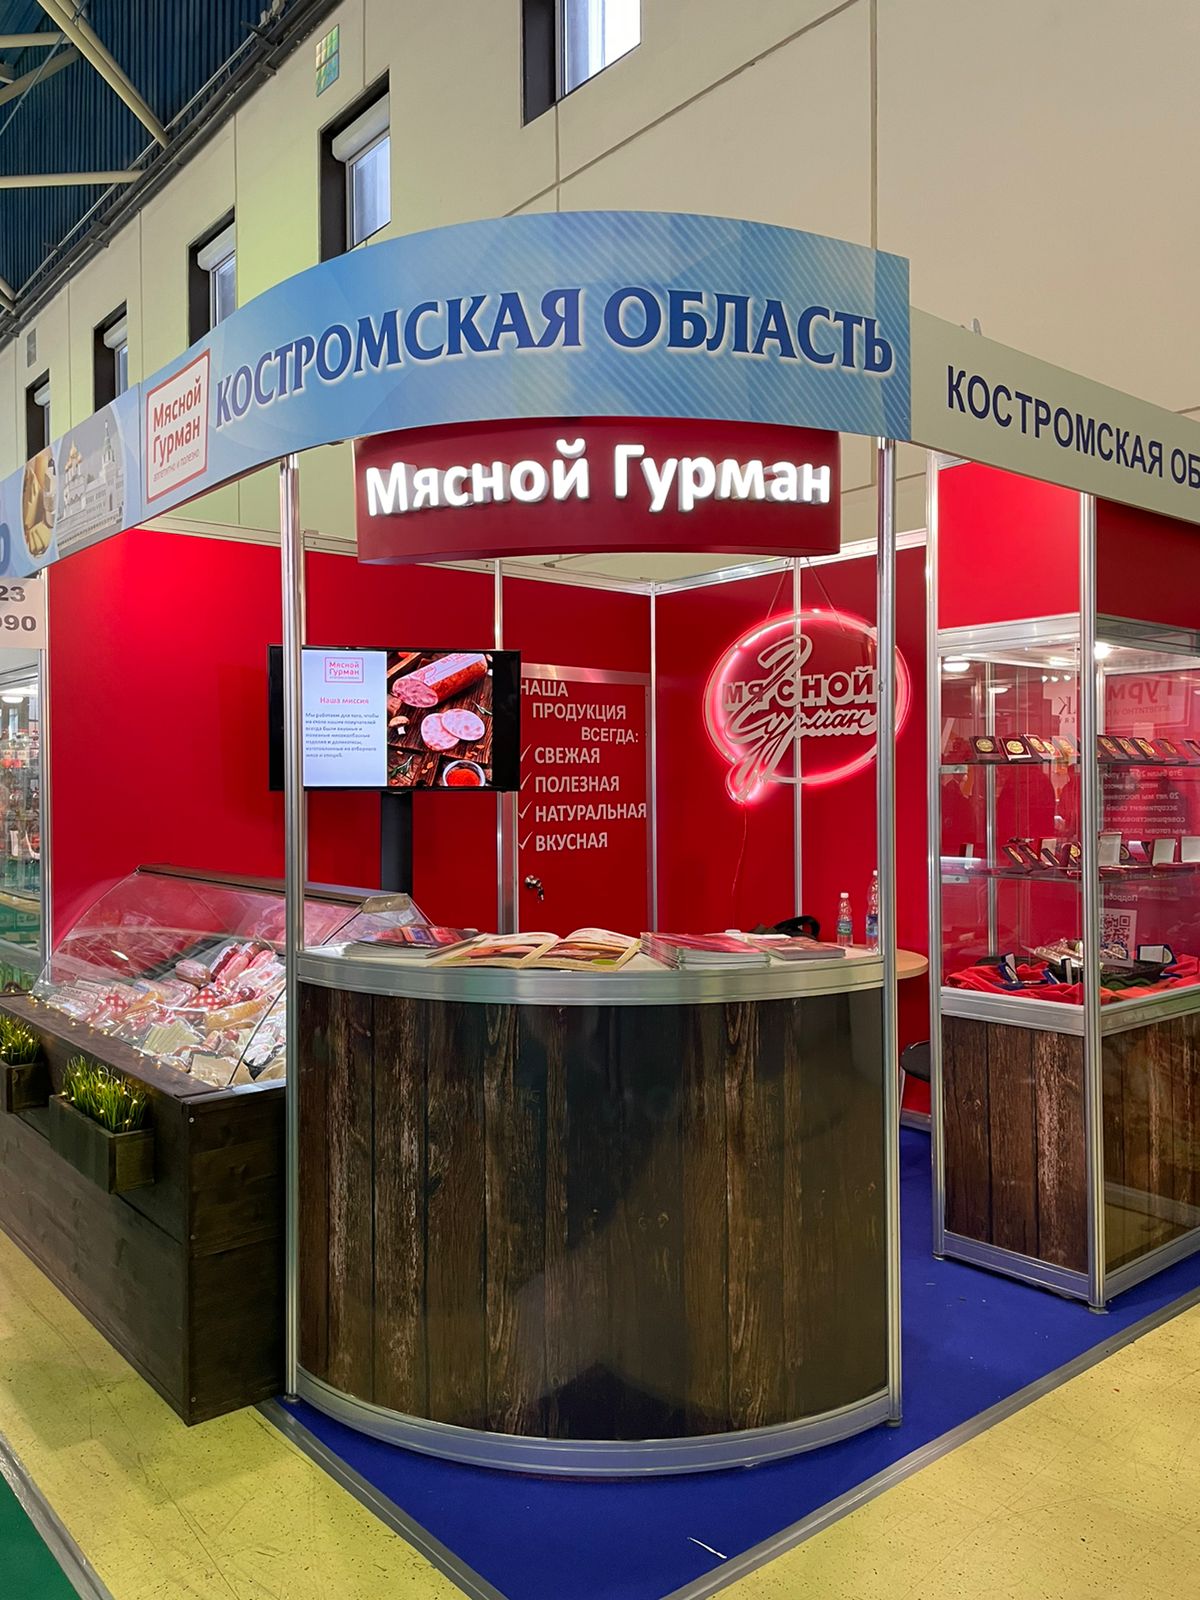 Любимый костромичами “Мясной гурман” завоевал золото на престижнейшей выставке в Москве